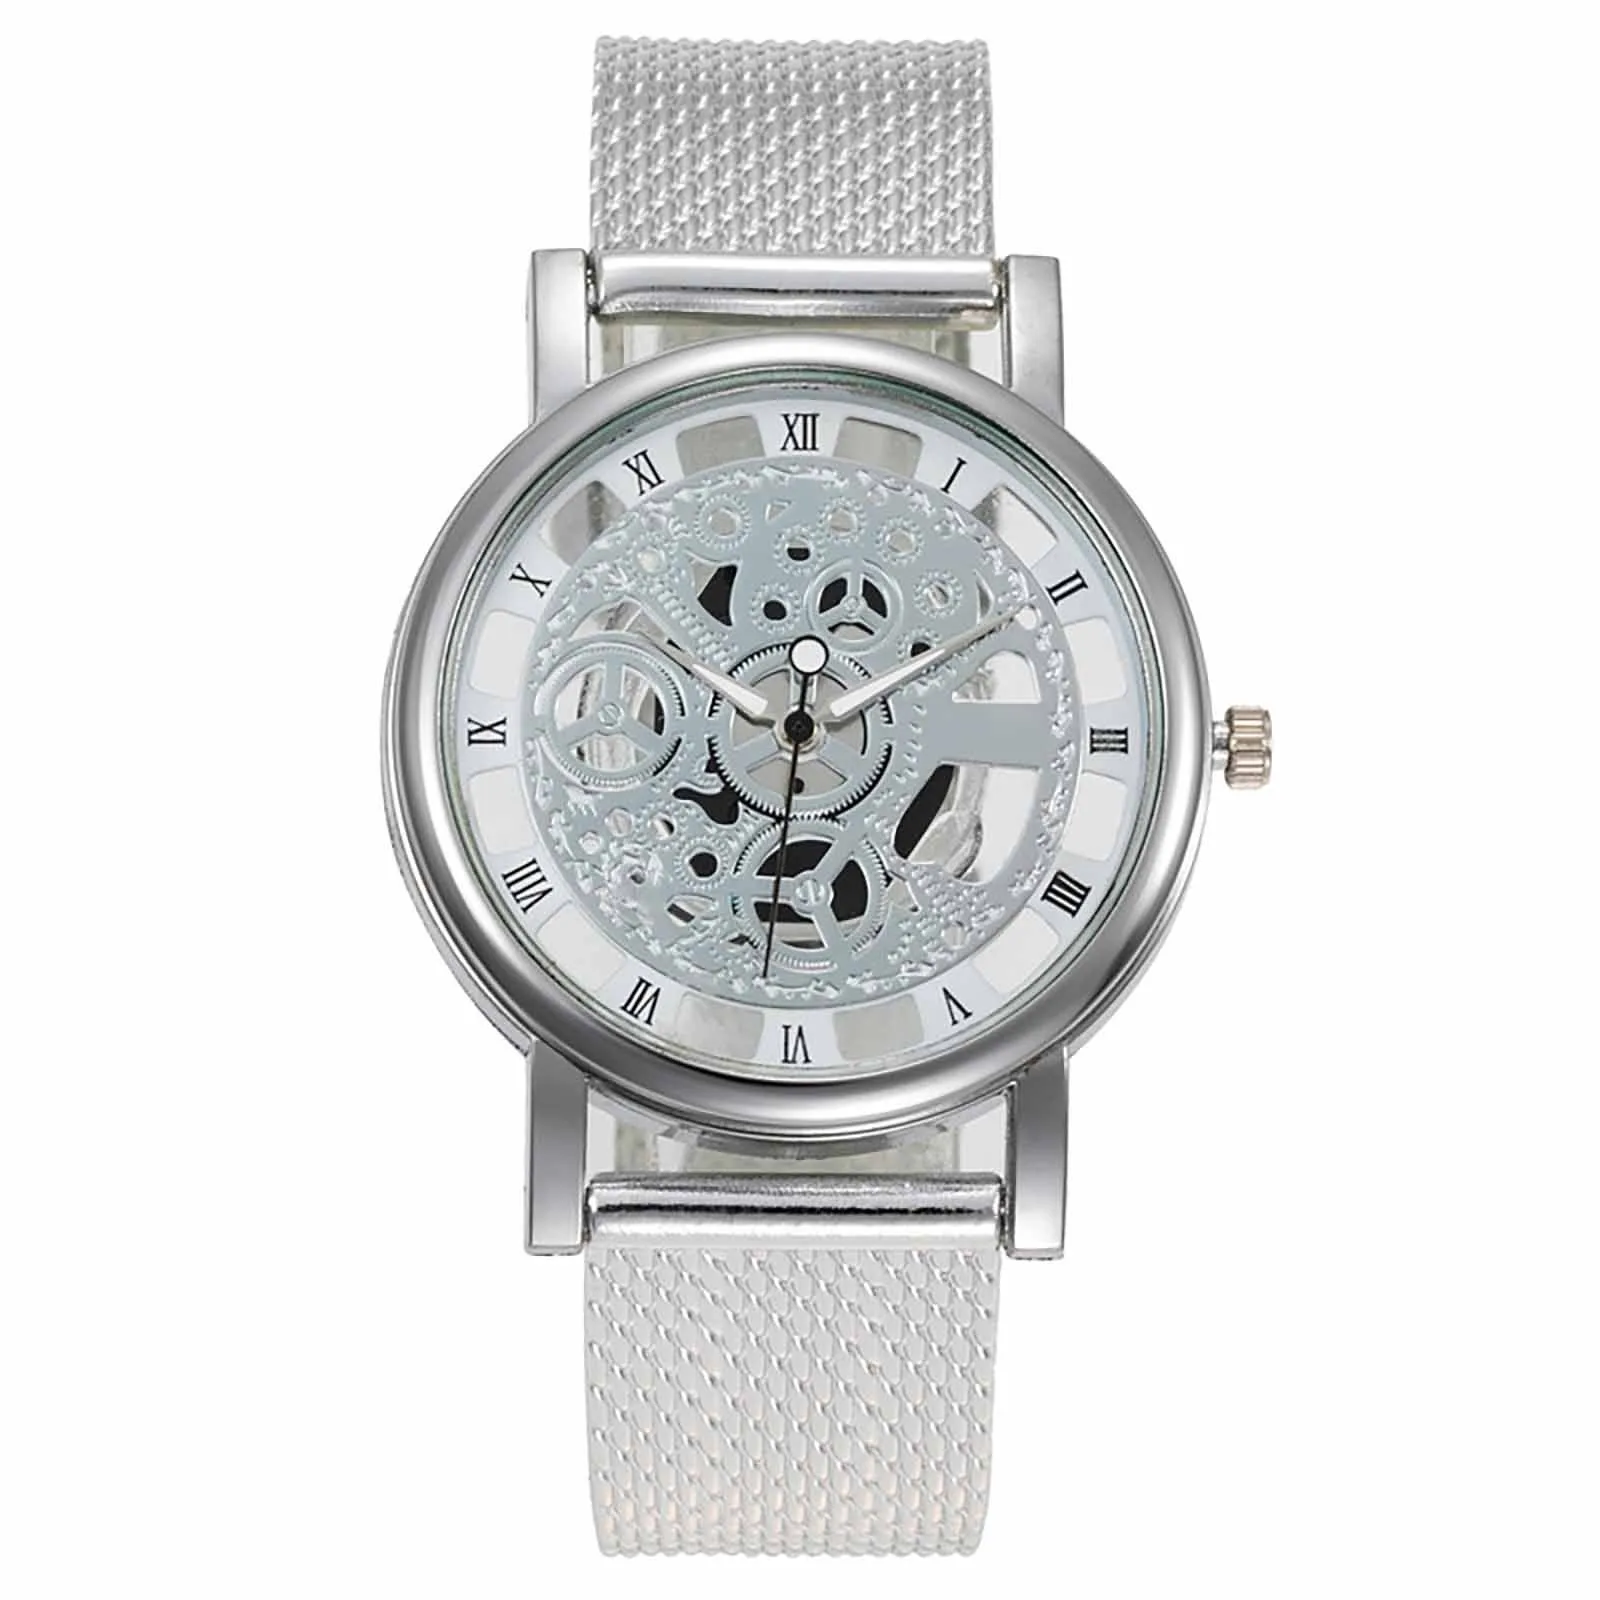 Luxry Brand Hollow incisione orologio da polso per uomo scheletro orologio maschile Saat Quartz Business Fashion orologio con cinturino in pelle Curren